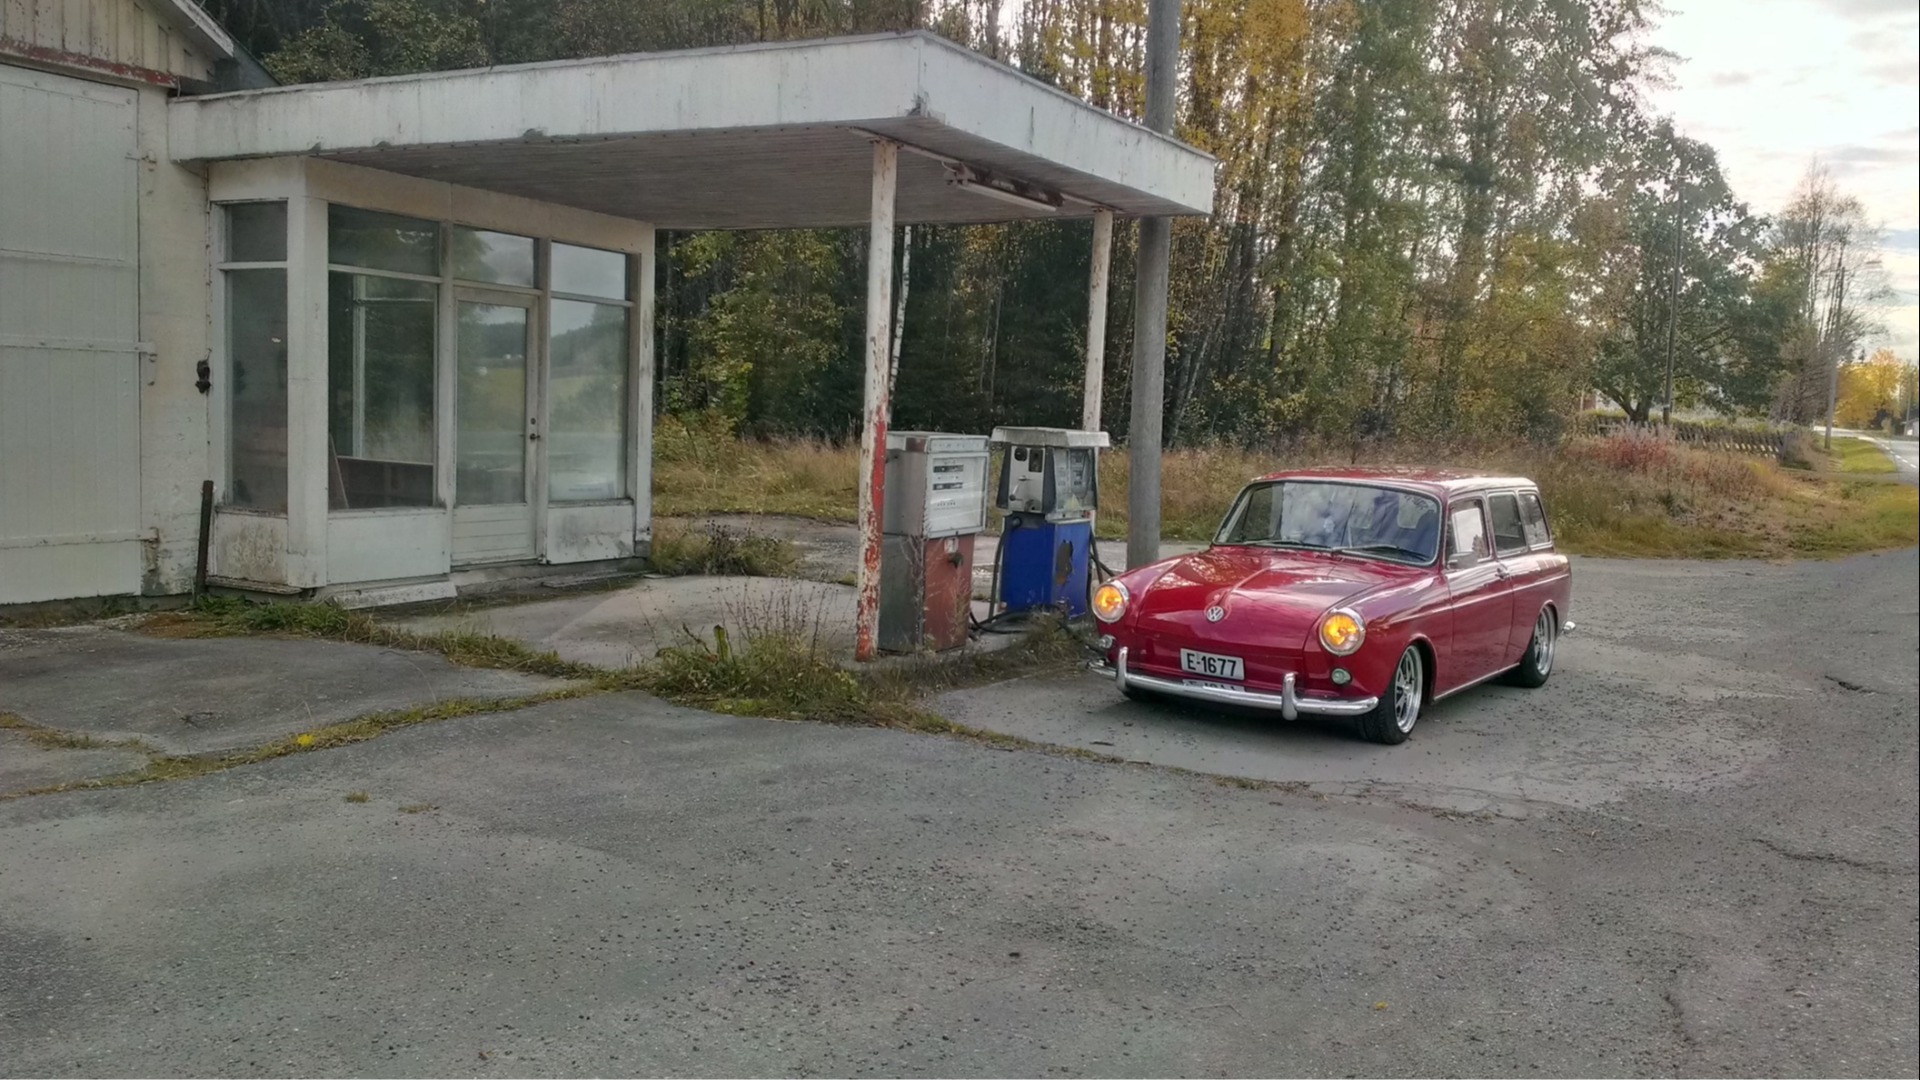 Fra en kjøretur gjennom Aremark. Geir stoppet ved en nedlagt bensinstasjon som blant annet er brukt i Lotto-reklame tidligere.